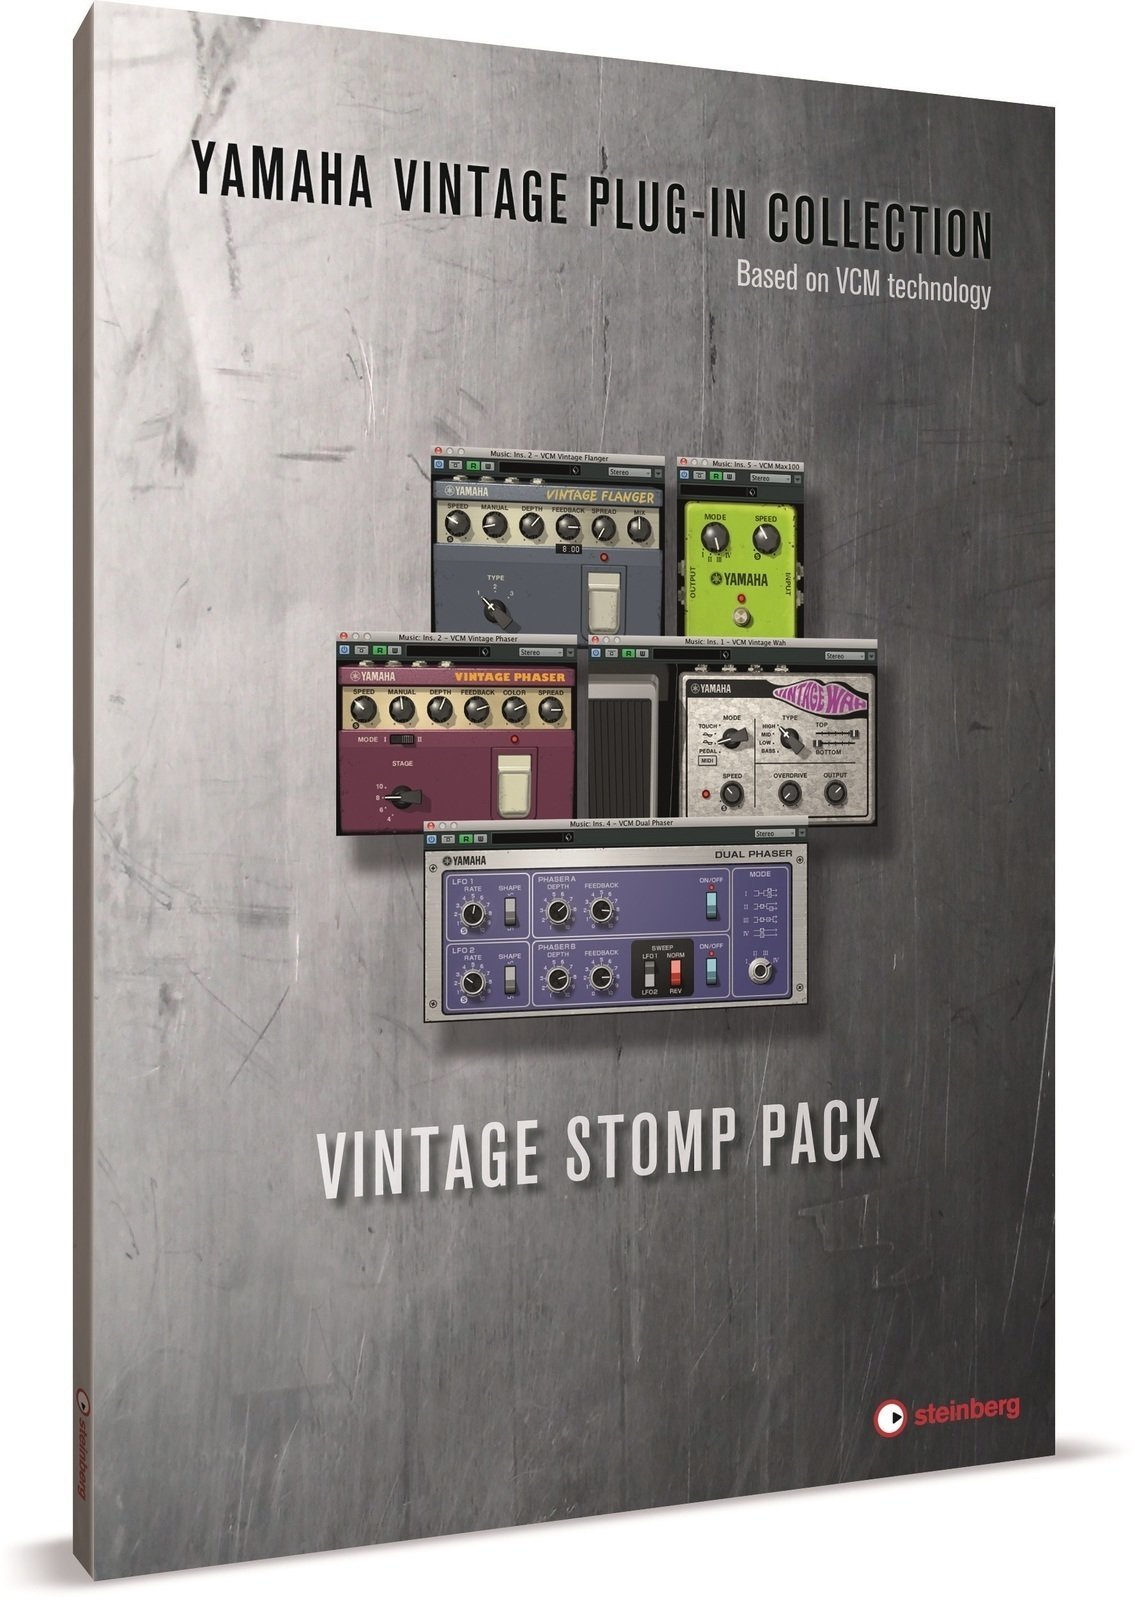 Studio-Software Steinberg Vintage Stomp Pack